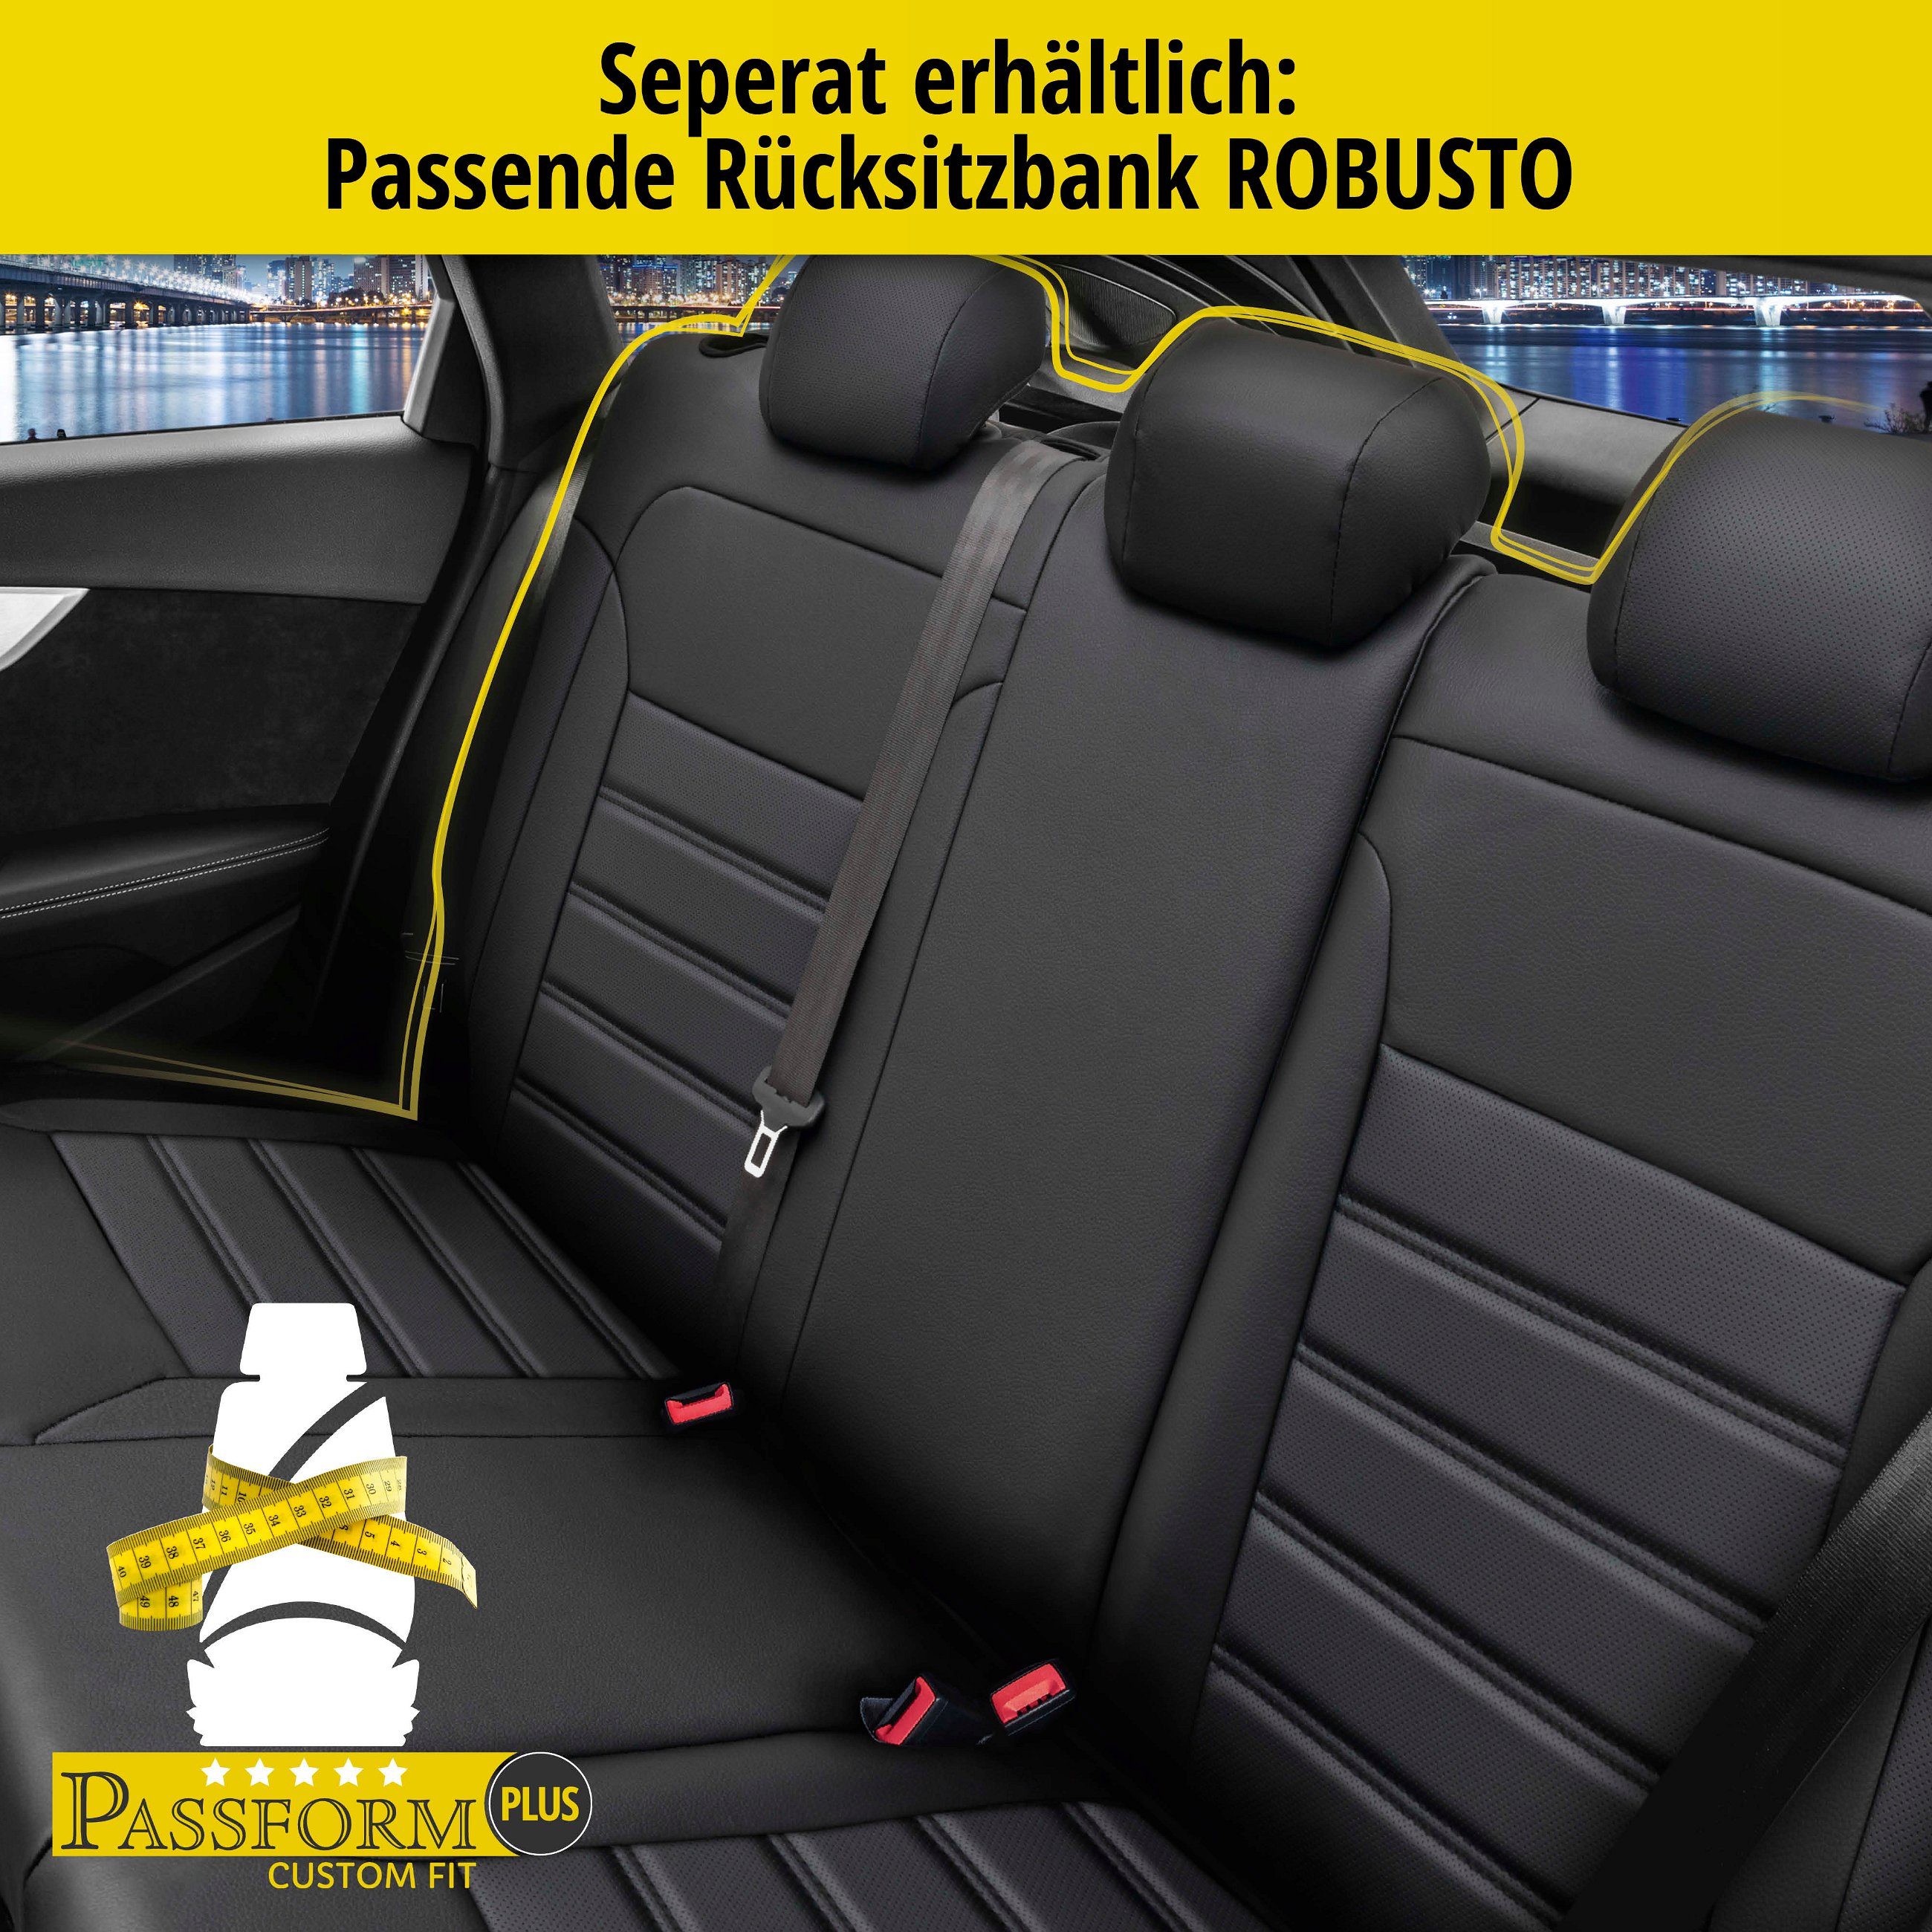 Passform Sitzbezug Robusto für Skoda Octavia 11/2012-Heute, 2 Einzelsitzbezüge für Normalsitze